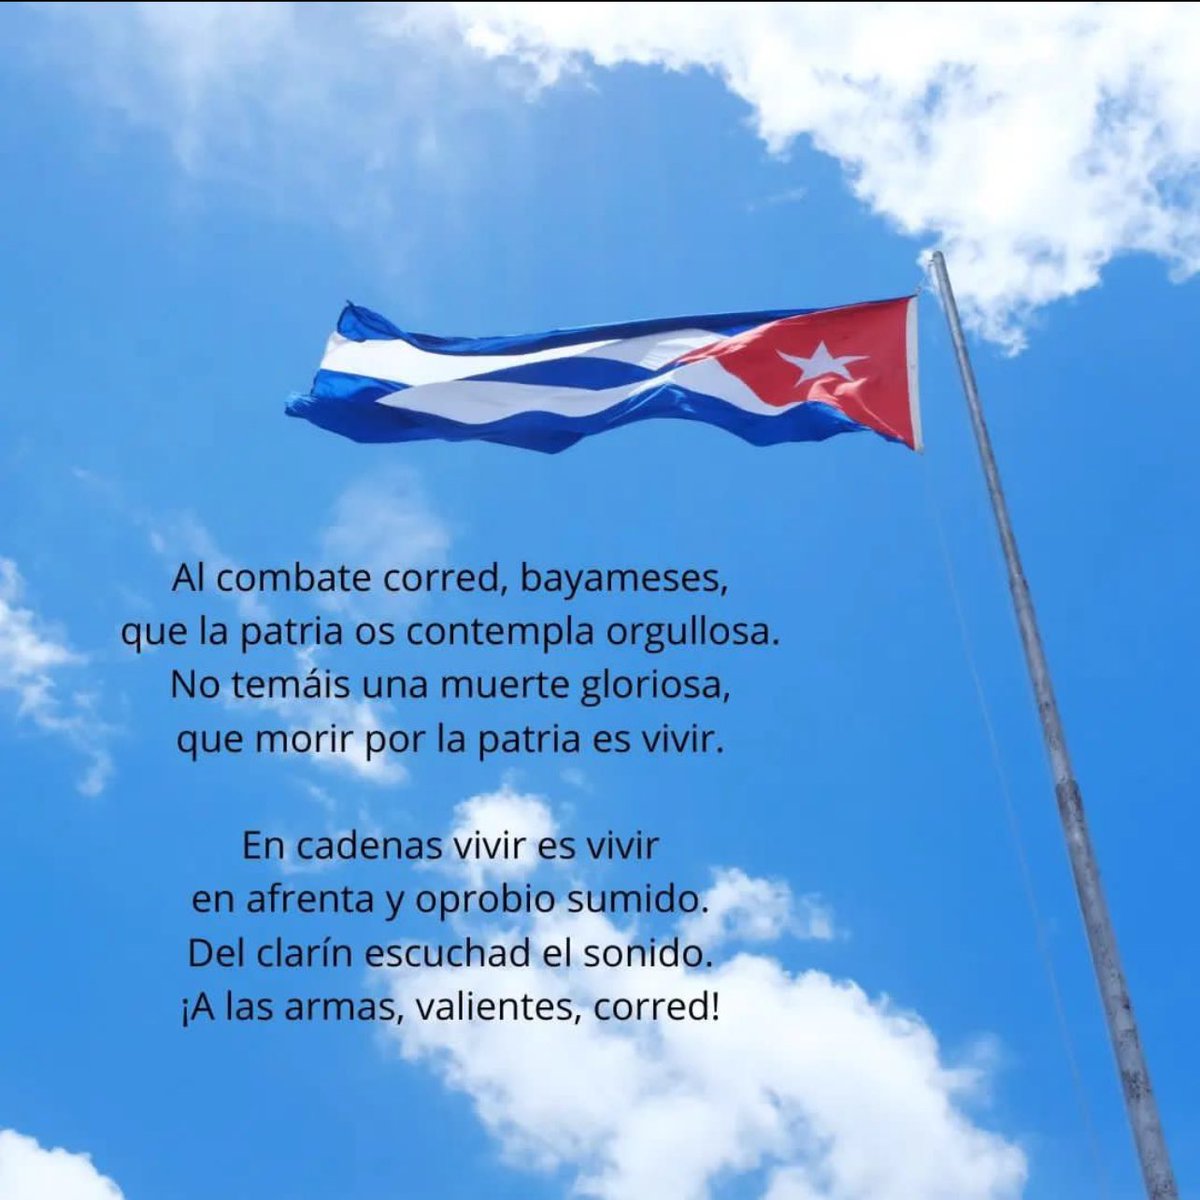 #Hoy se celebra en #Cuba el #DíaDeLaCulturaCubana 

#20deoctubre2023 
1️⃣5️⃣5️⃣Aniversario de la Interpretación del Himno Nacional

                                   ✊🏻🇨🇺✊🏻